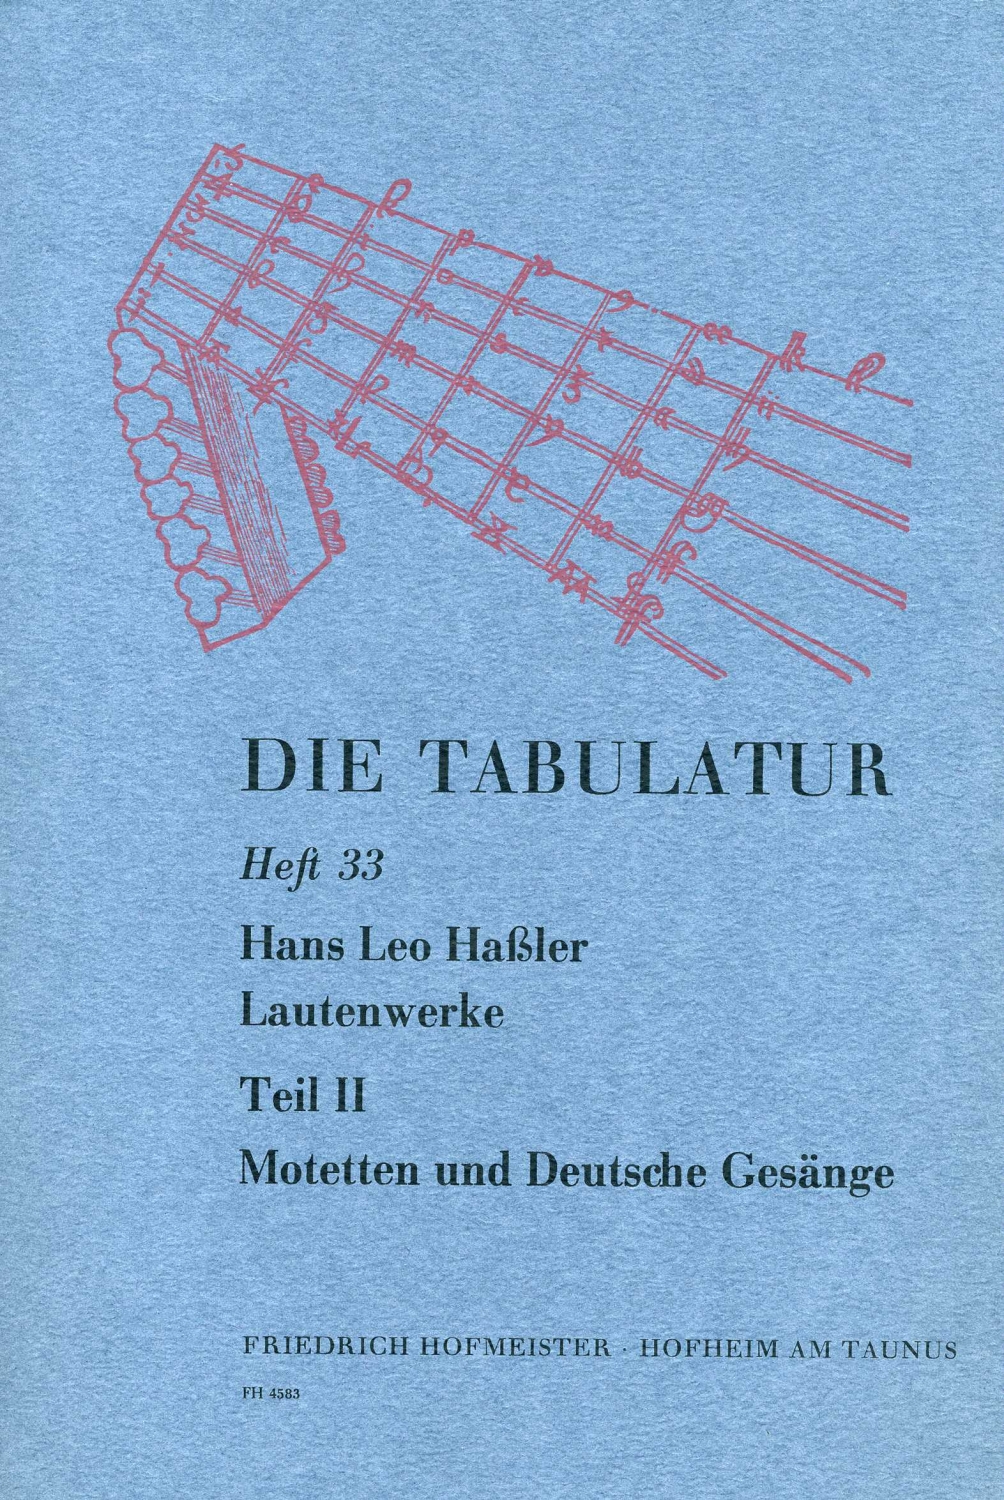 hans-leo-hassler-lautenwerke-vol-2-lt-_0001.JPG